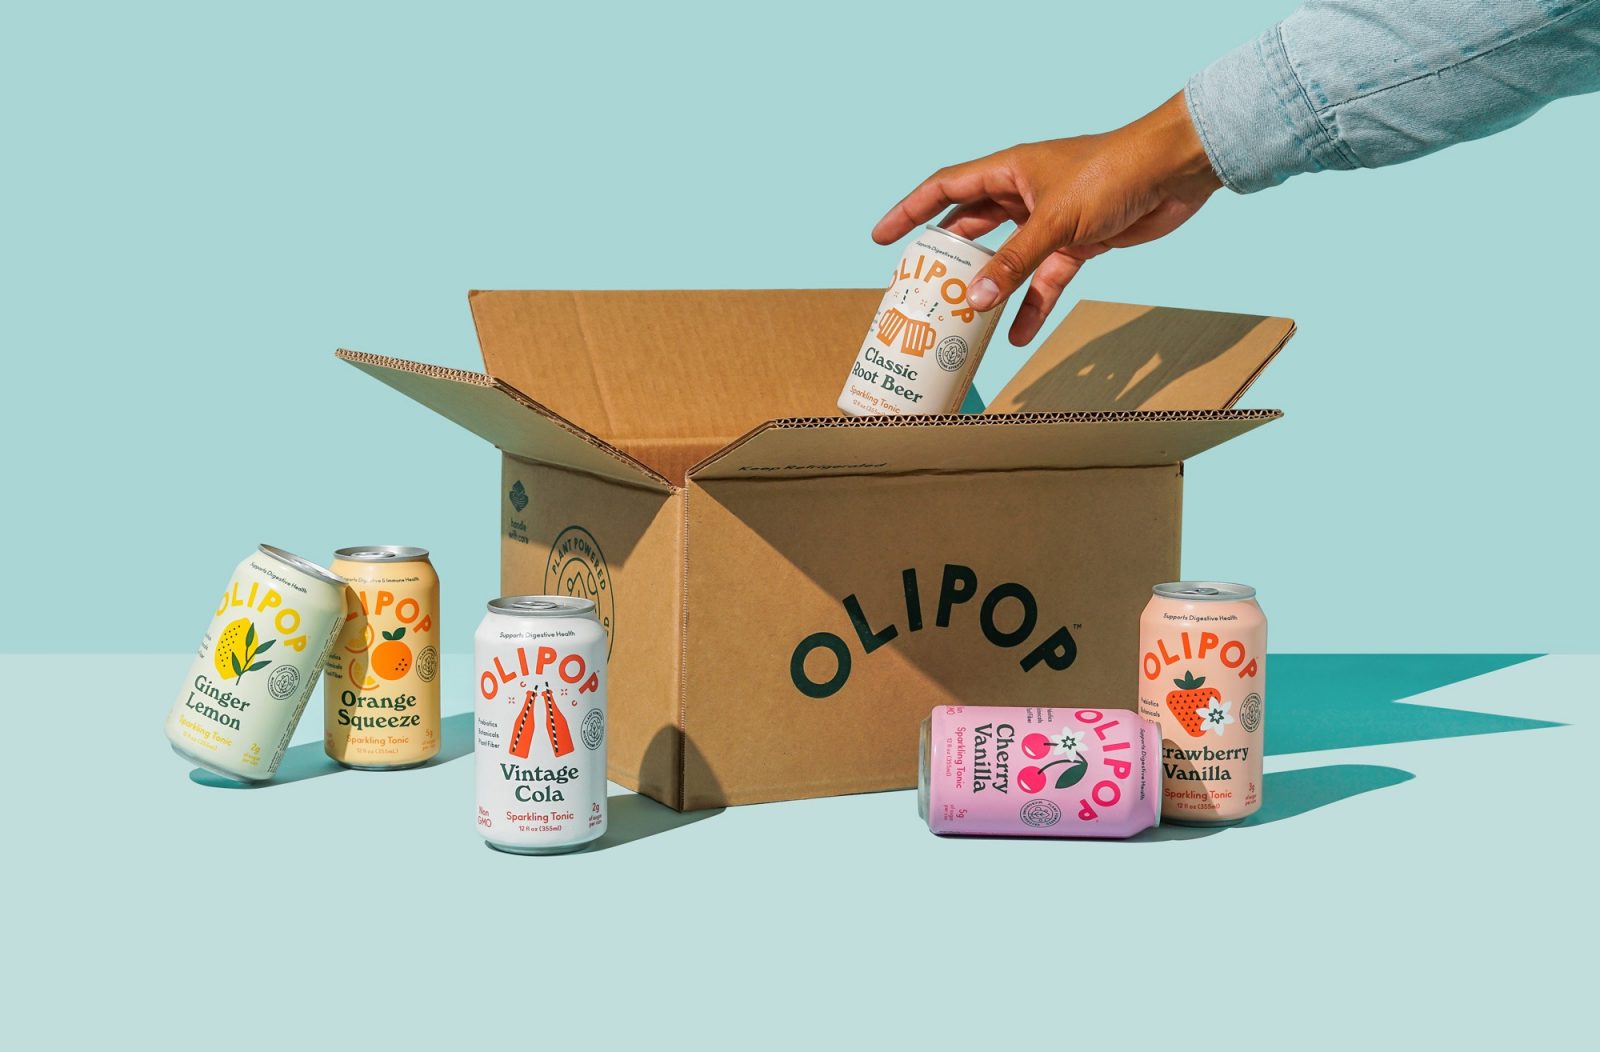 Packaging Design for Olipop Sparkling Tonics